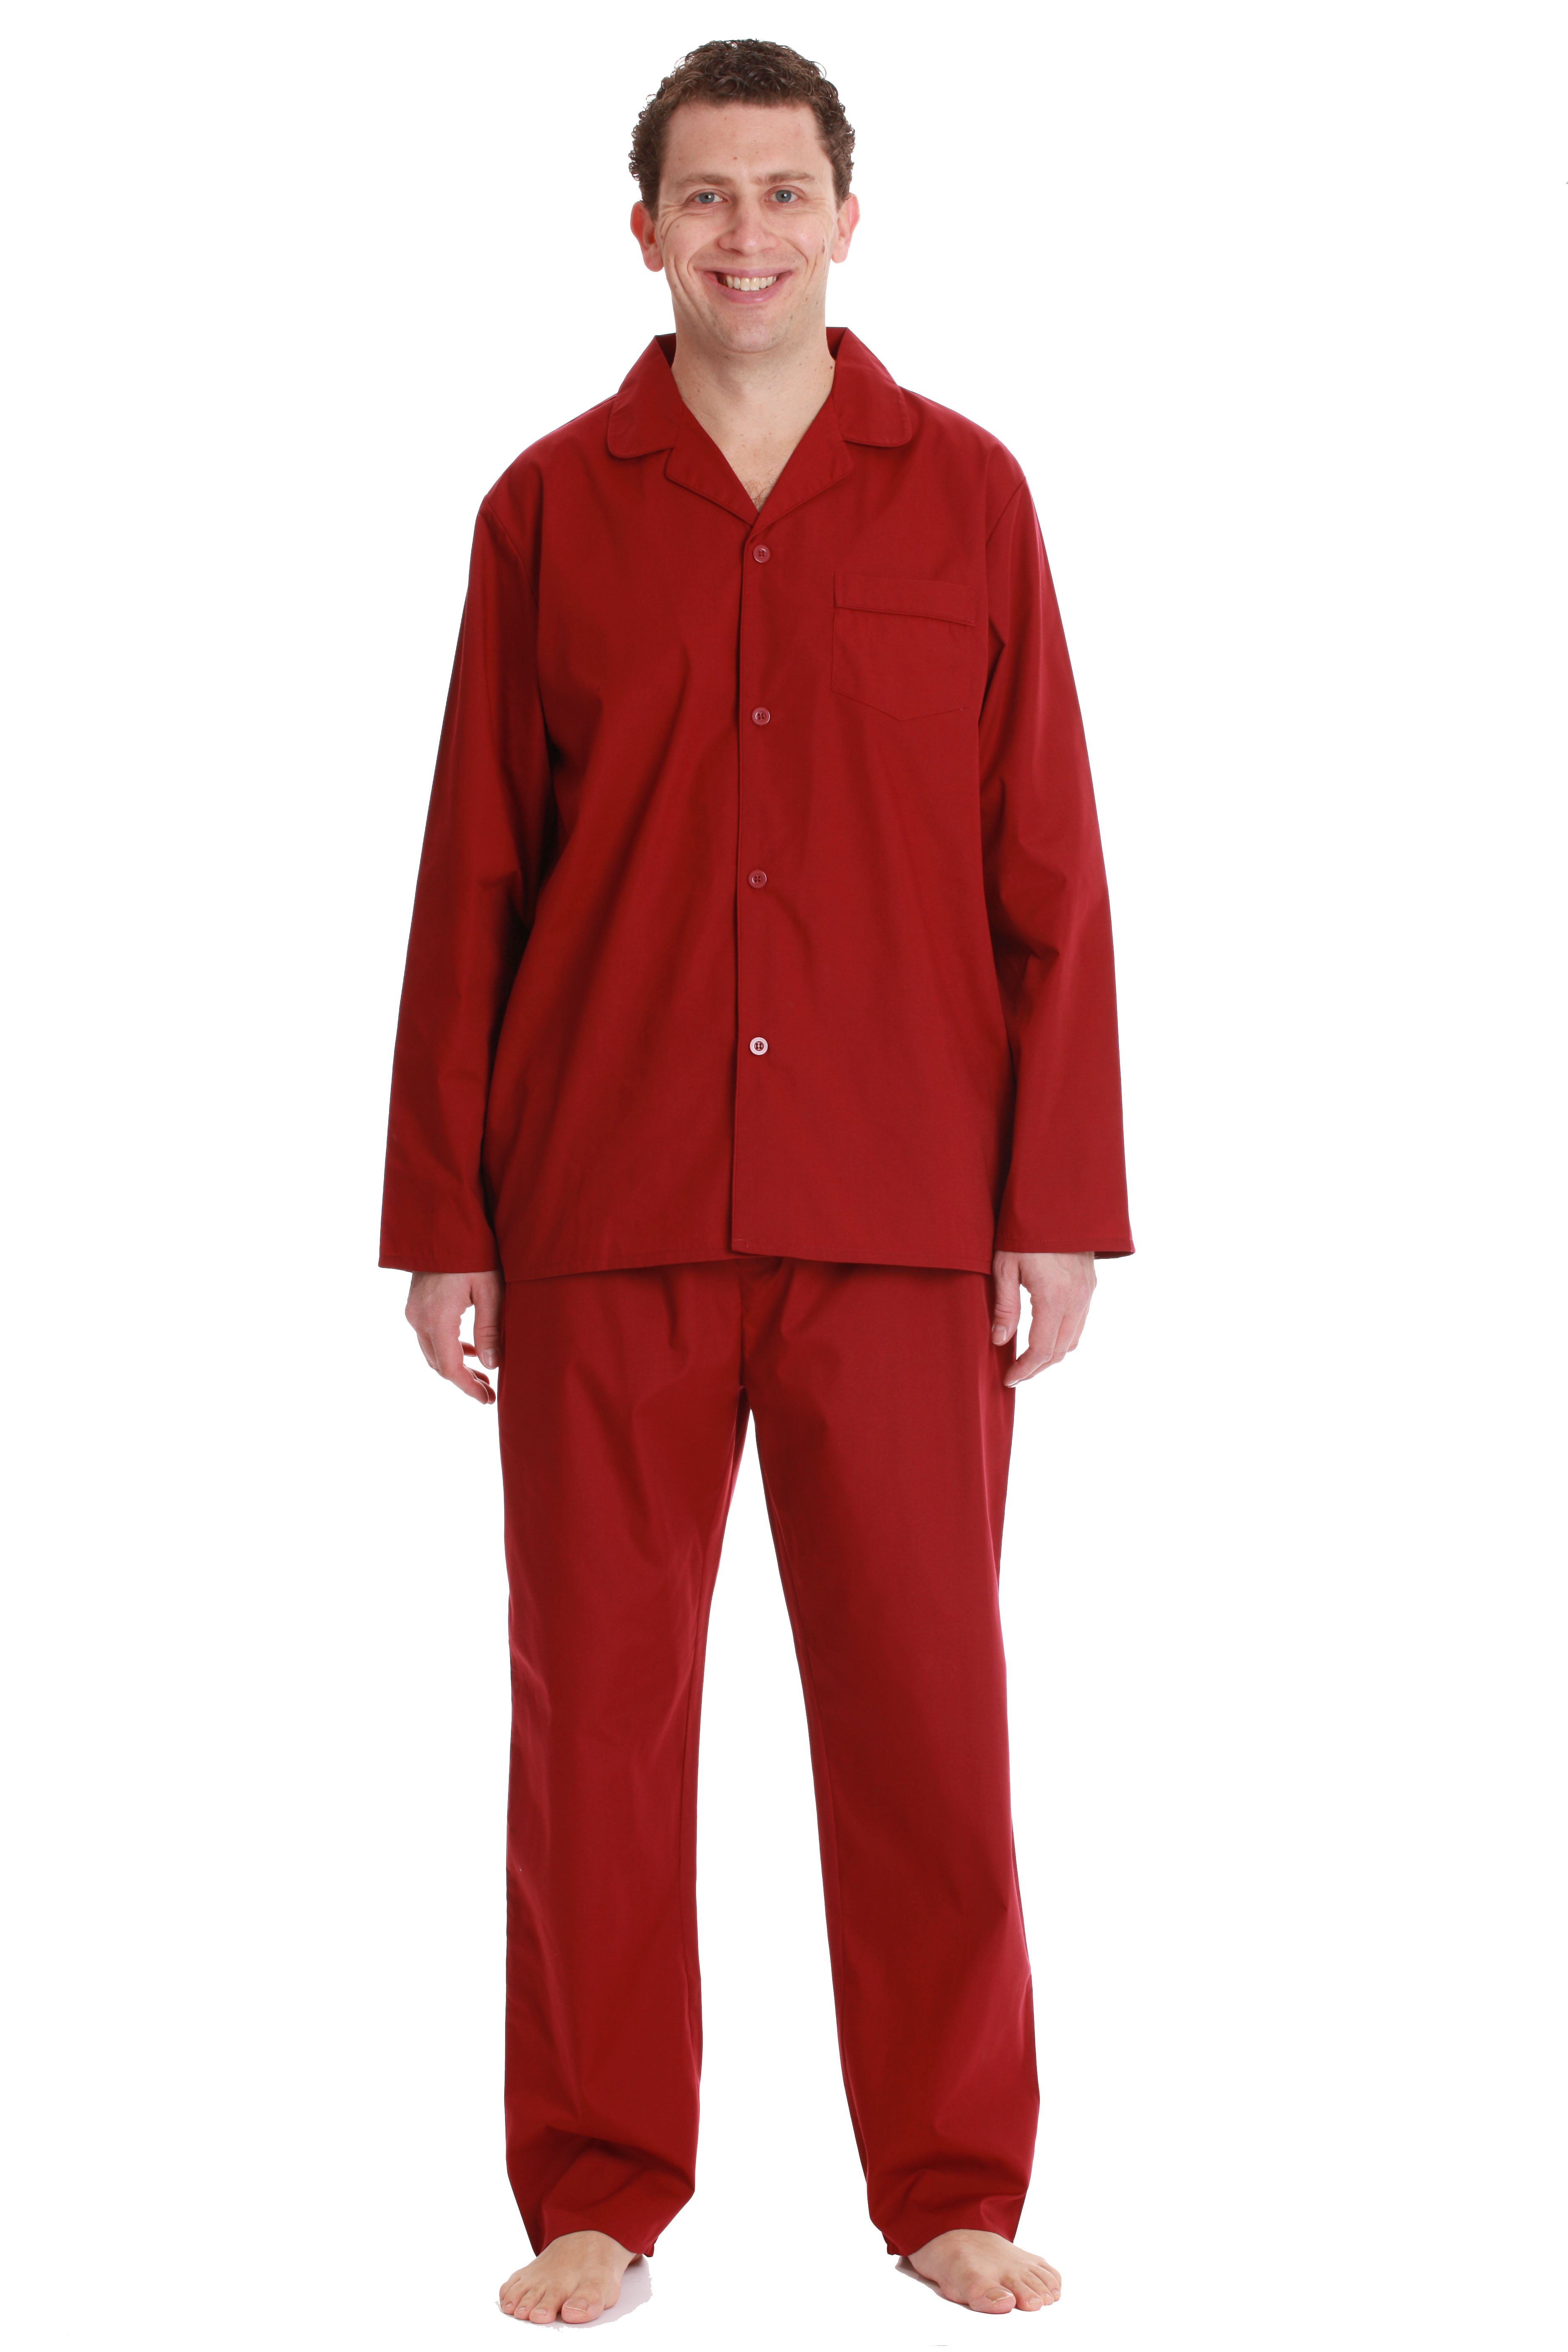 #followme Plaid Pajama Set for Men (Burgundy, Small) - Walmart.com